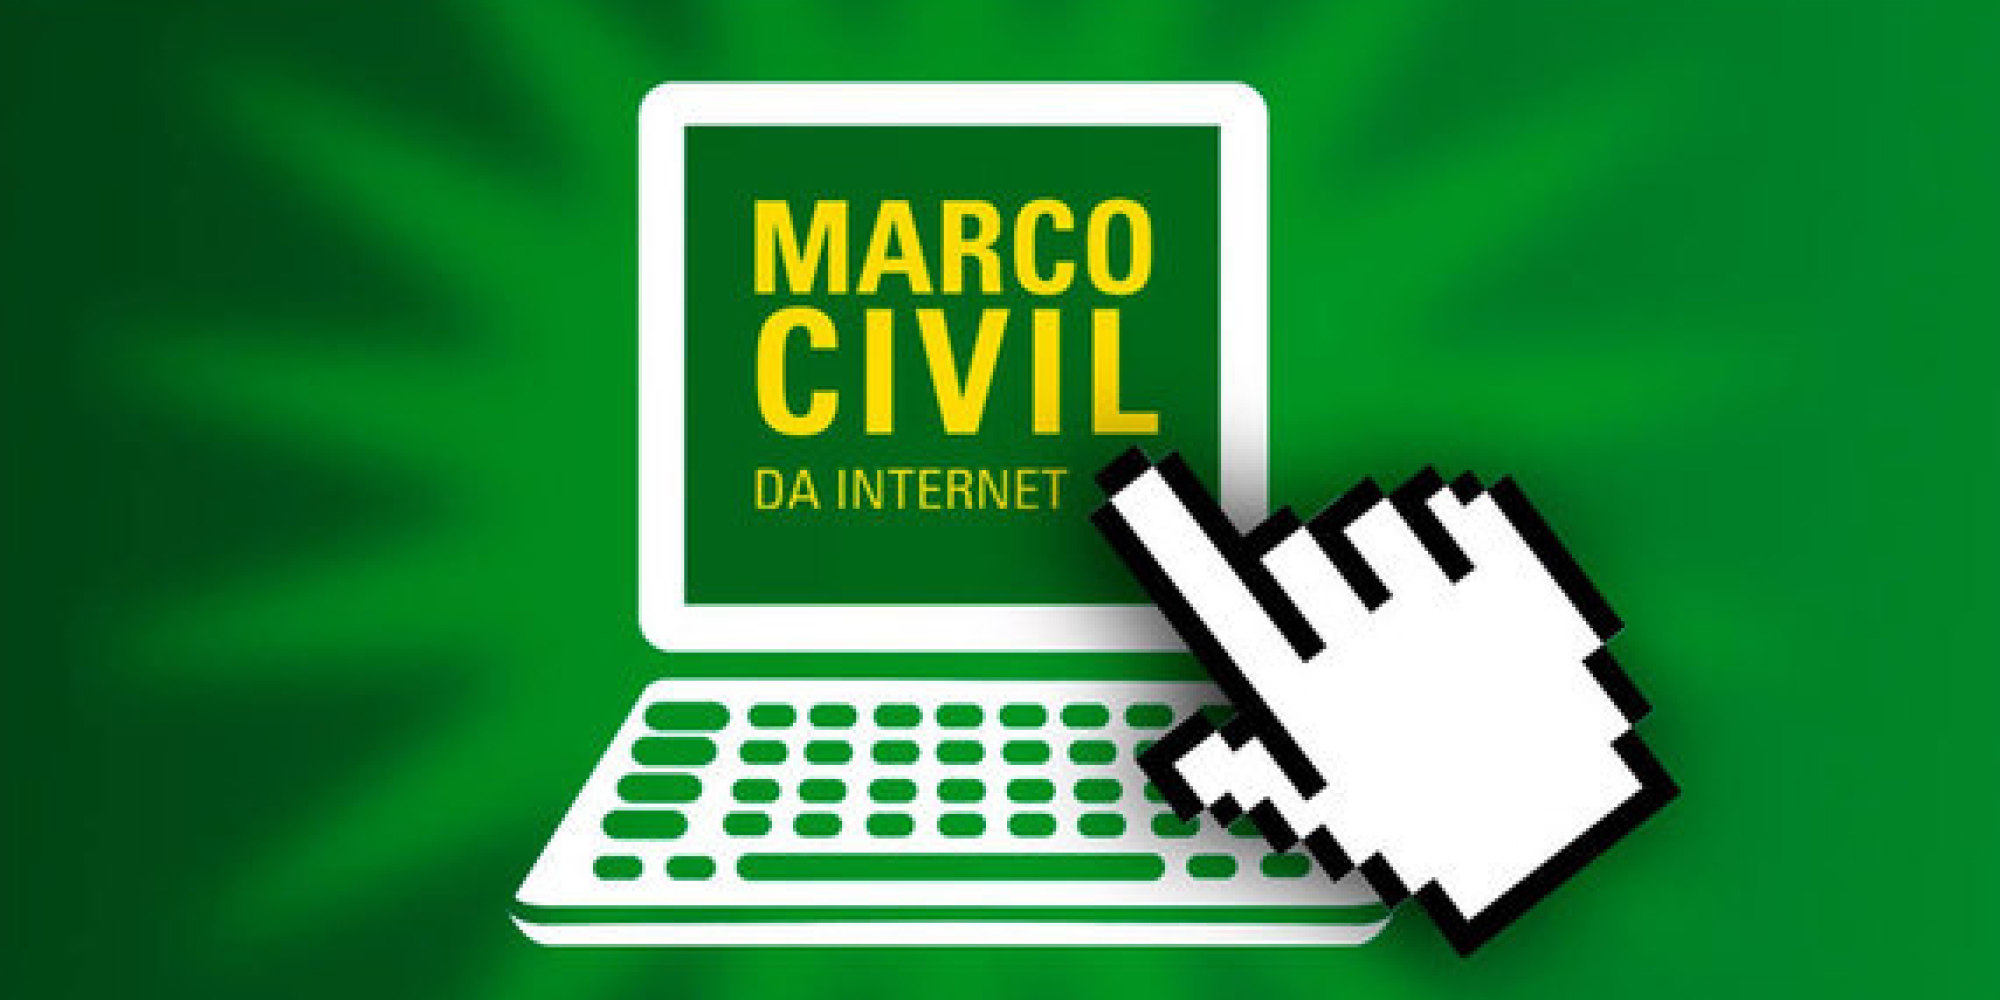 Consulta pública sobre Marco Civil da Internet termina amanhã